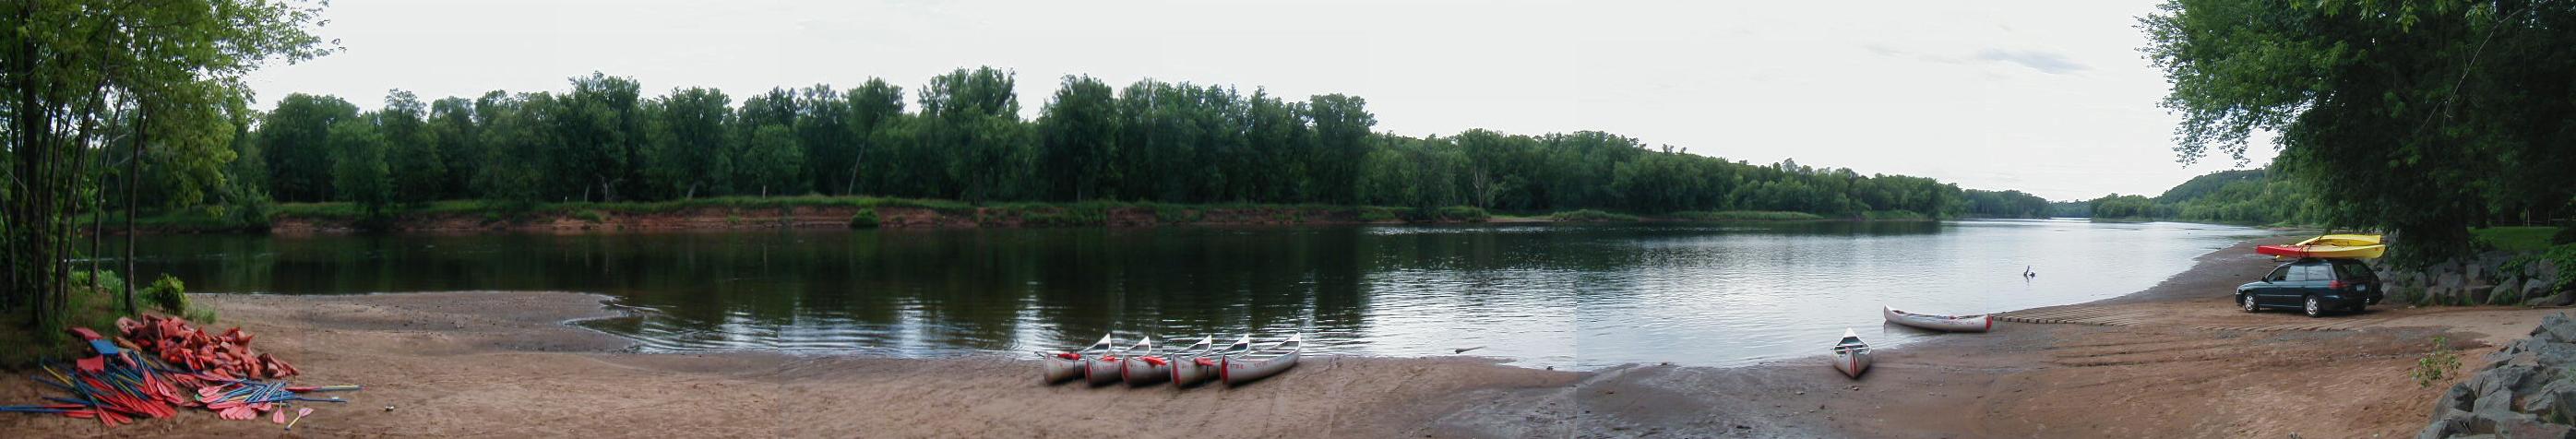 Canoeing at Taylors Falls, MN